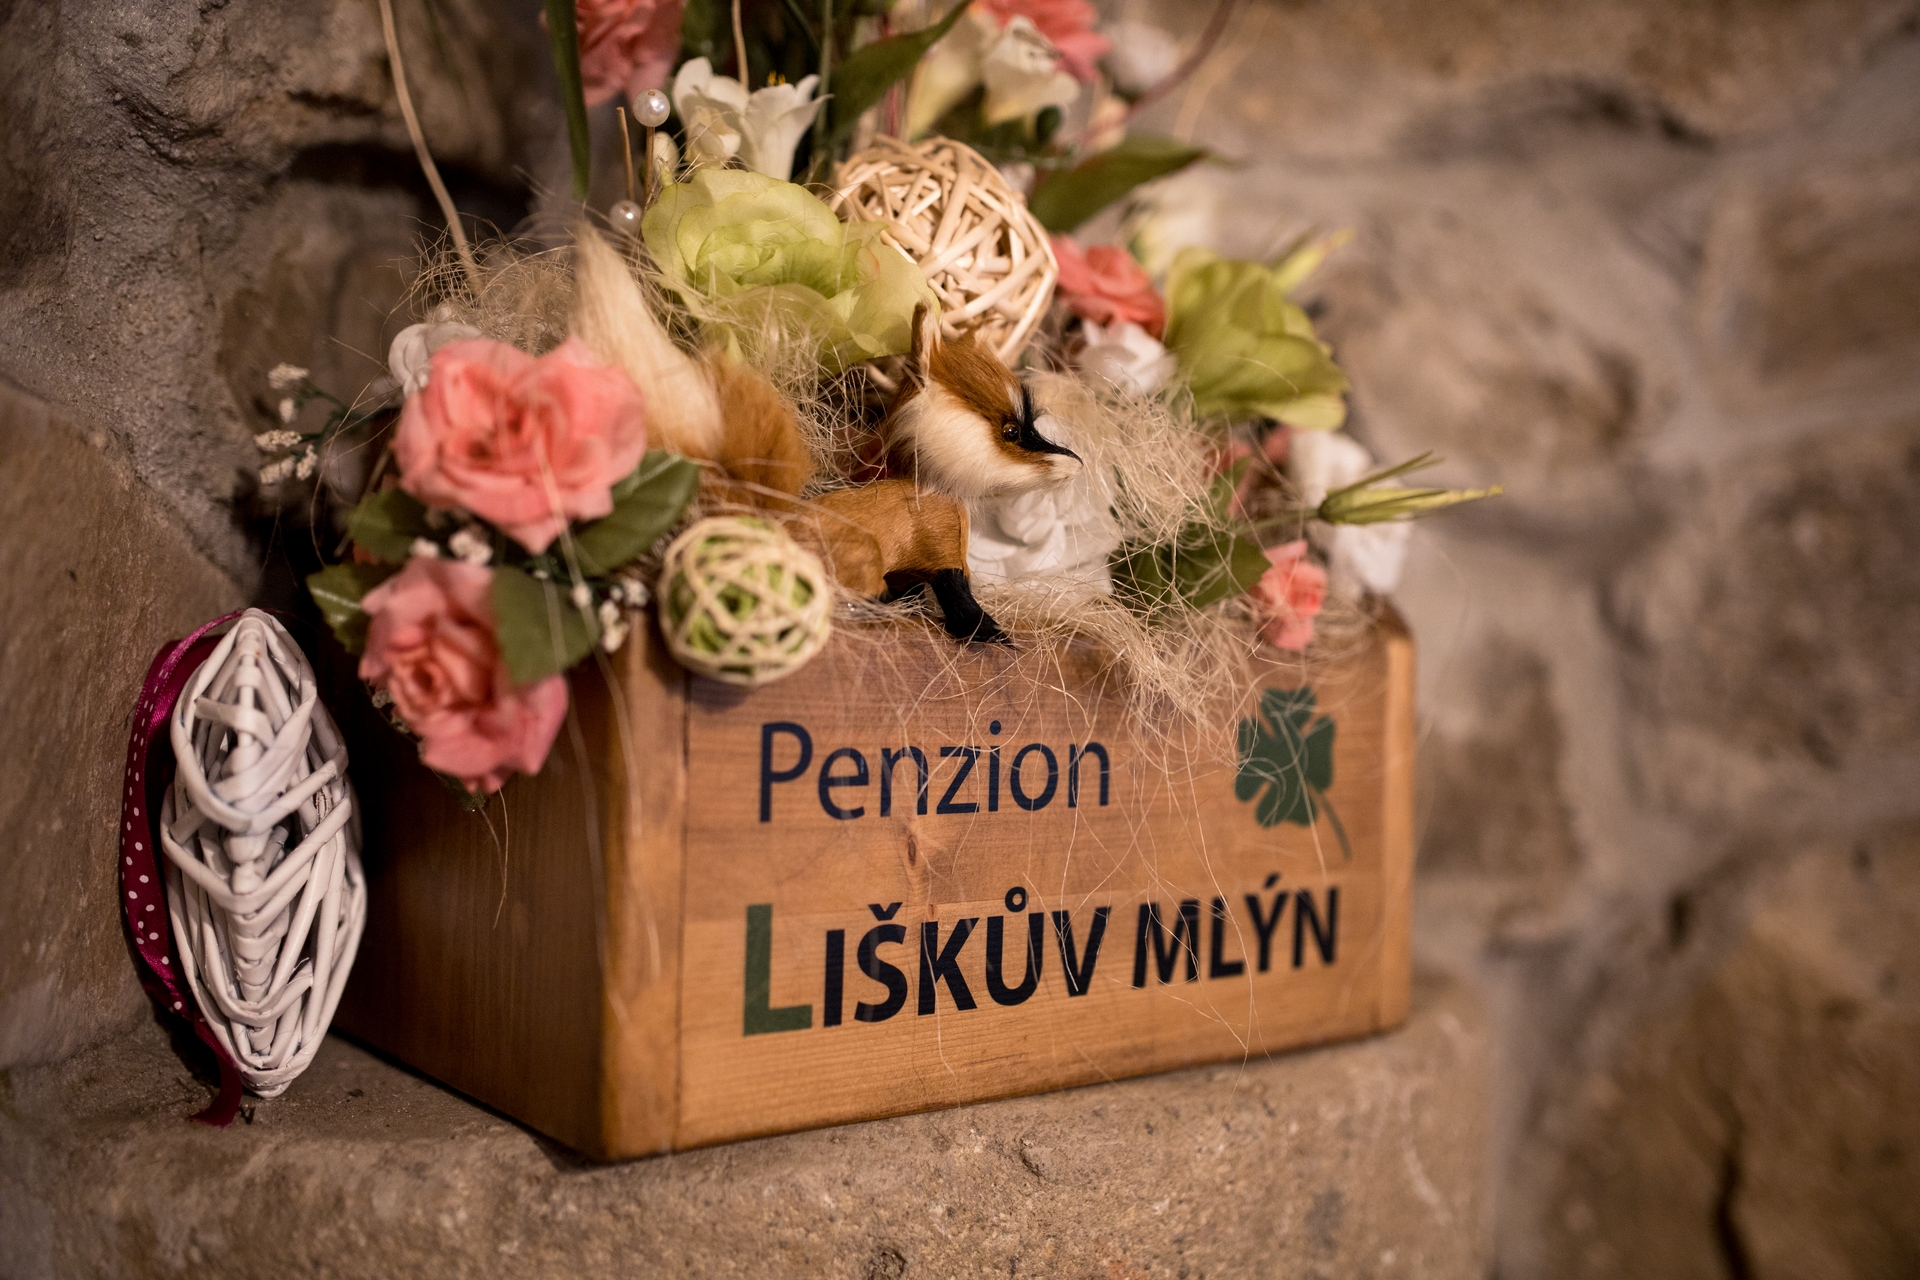 Svatba v penzionu Liškův mlýn, Příbram